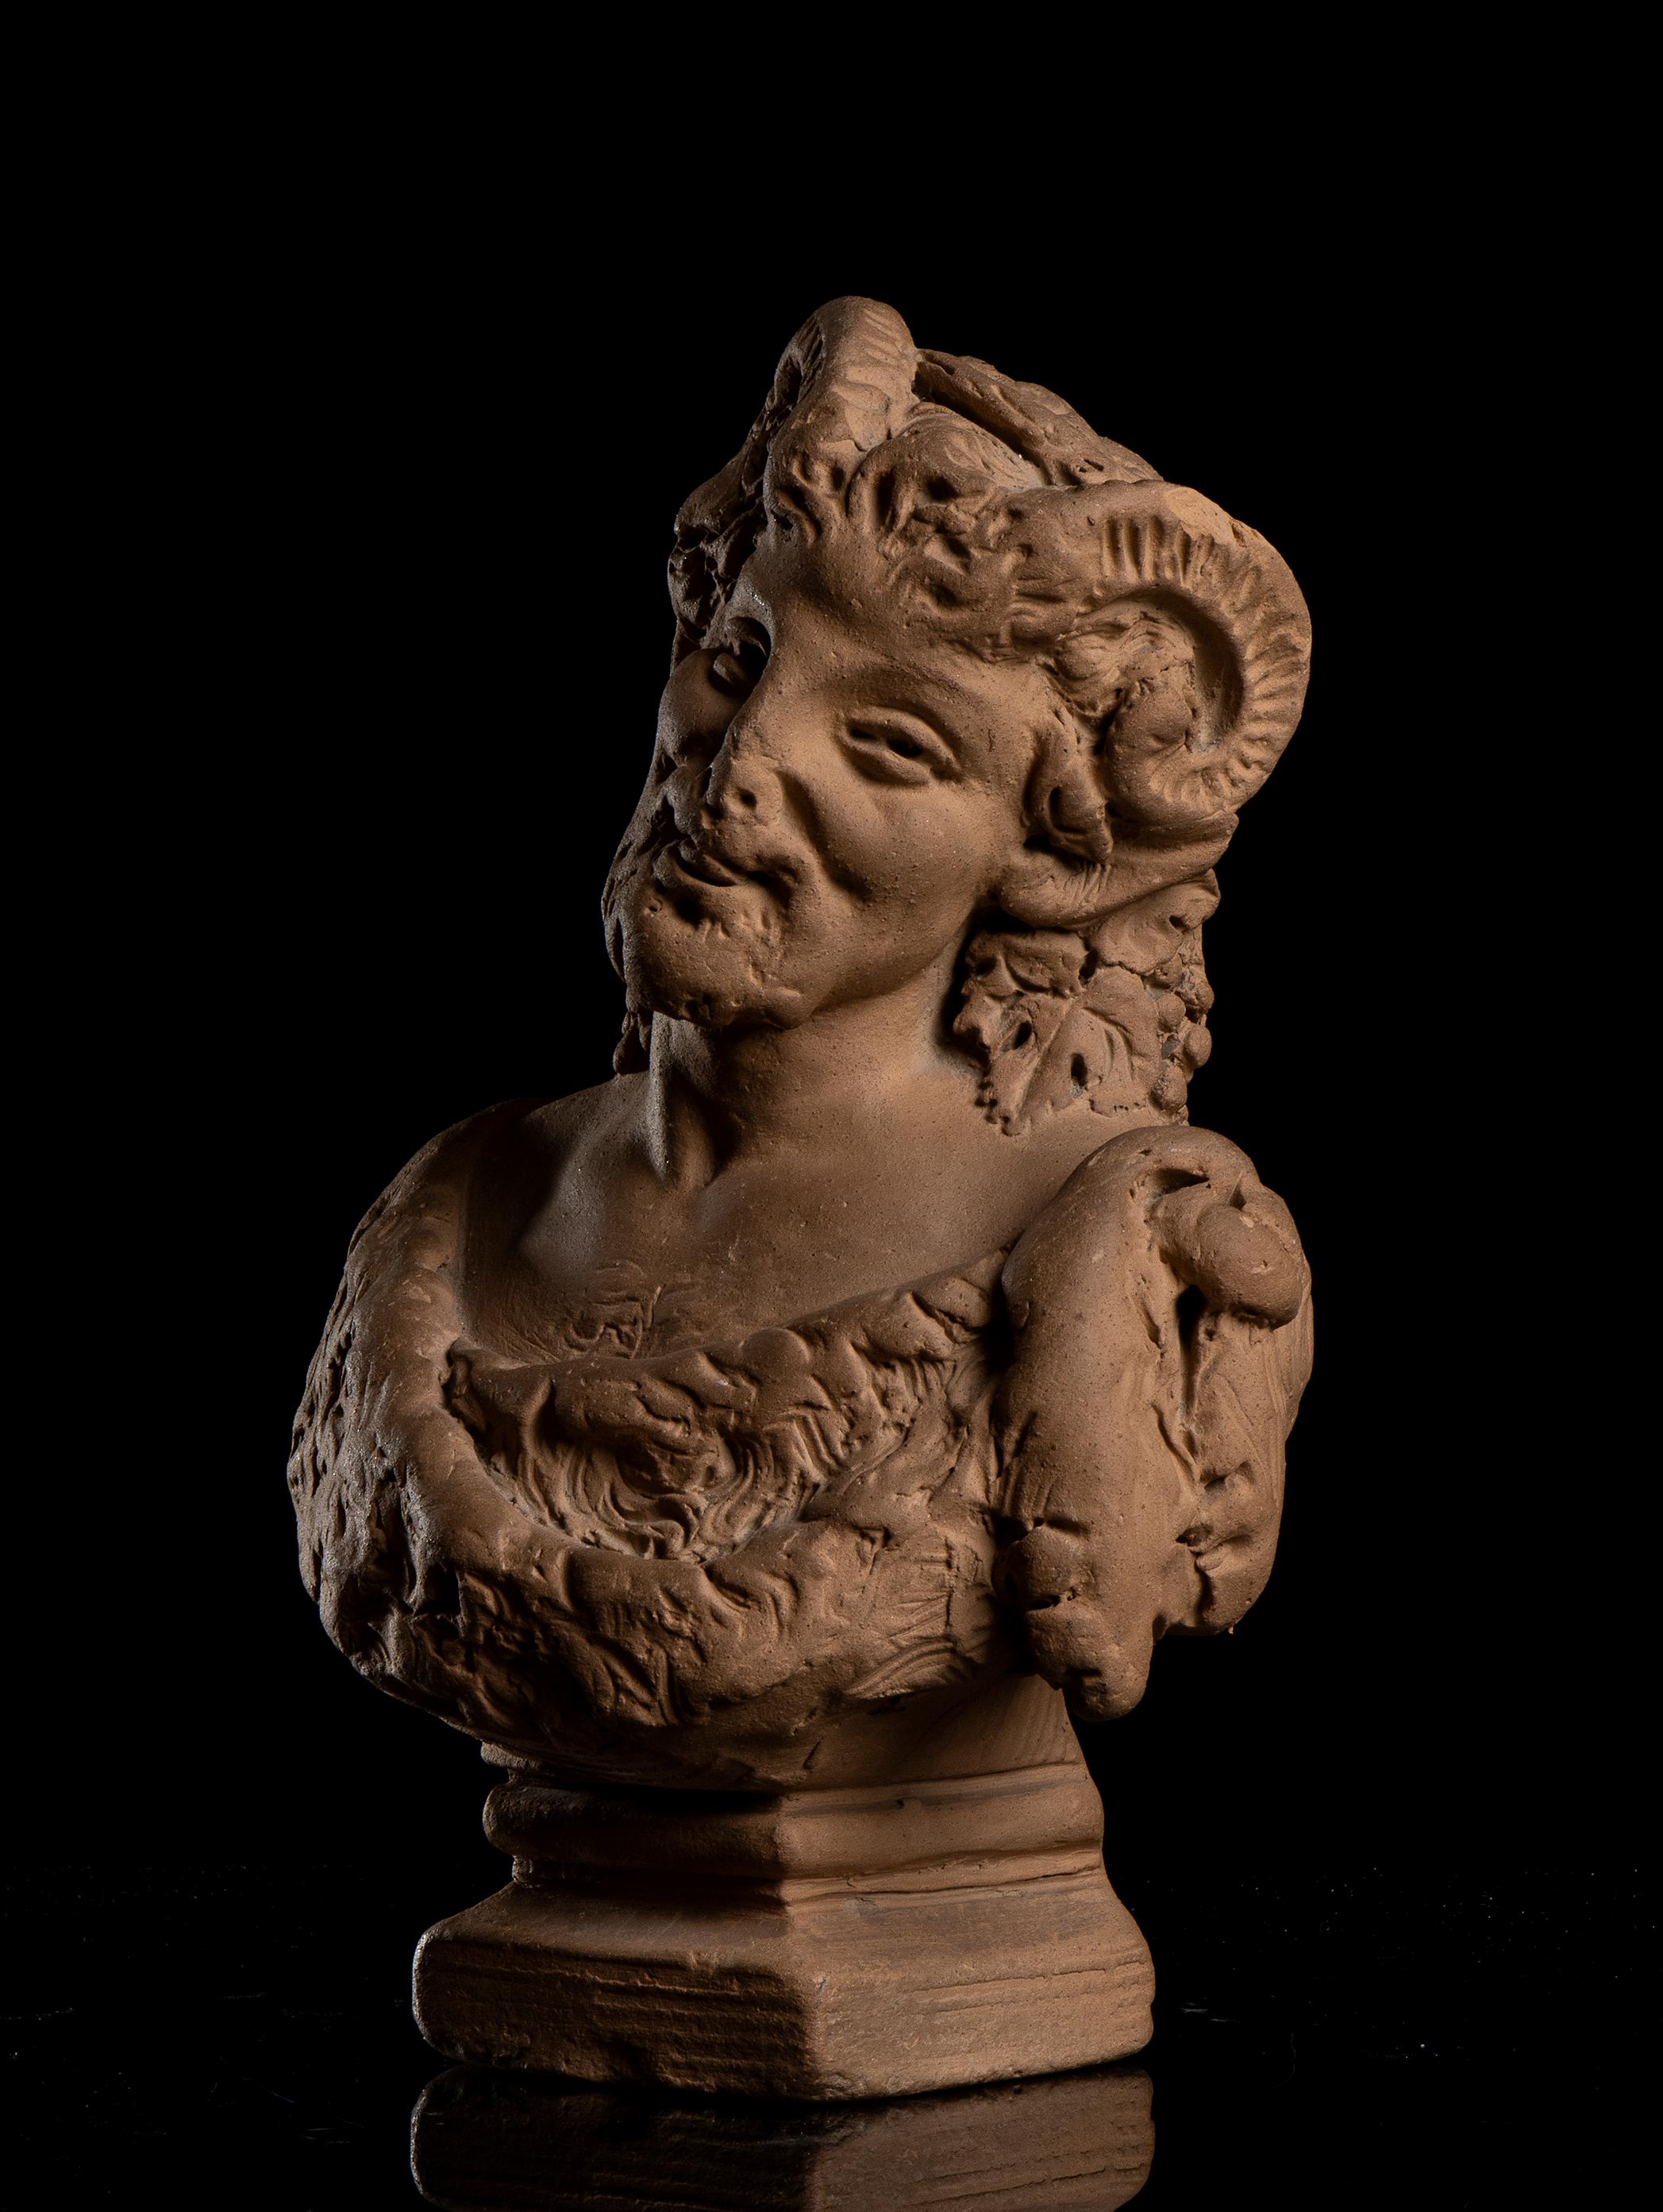 Paire d'importants bustes en terre cuite représentant le Satyre et la Nymphe par Antonio Giovanni Lanzirotti (Naples, 9 mai 1830 - 1921) signé au dos.  
Antonio Giovanni Lanzirotti était un sculpteur italien, il a étudié à Palerme jusqu'en 1848,